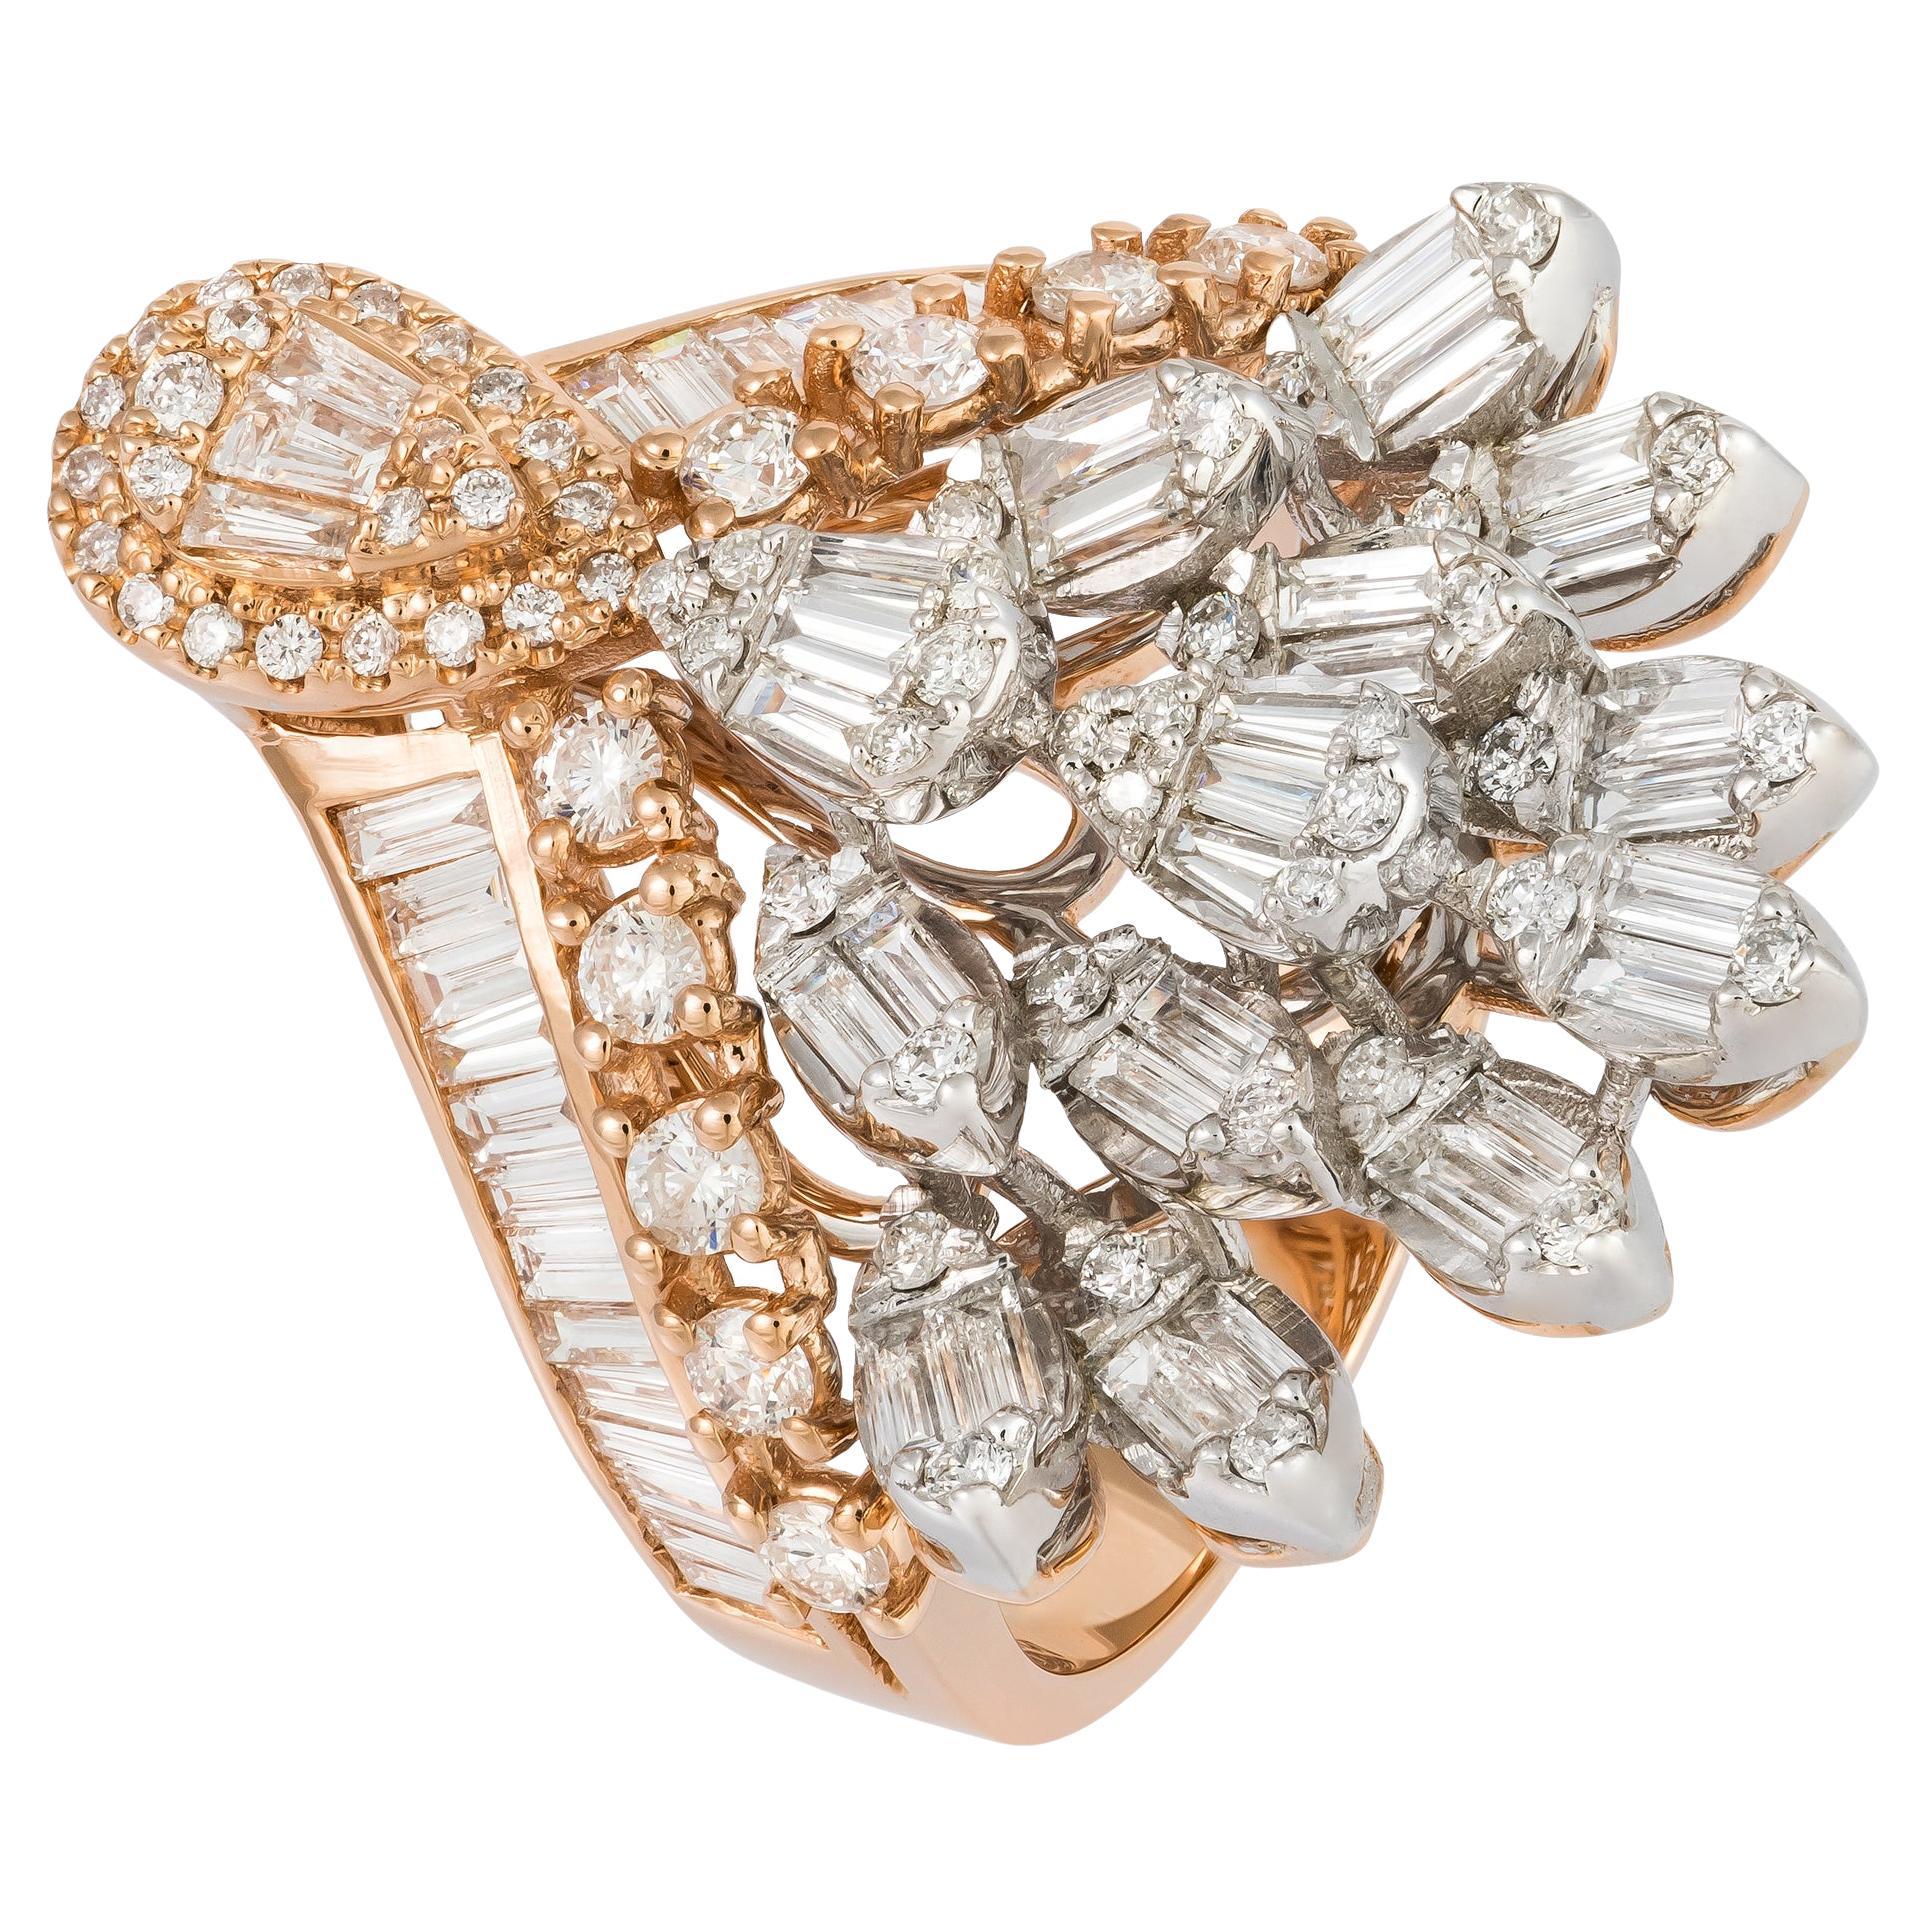 Sparkling  White Pink 18K Gold White Diamond Ring For Her